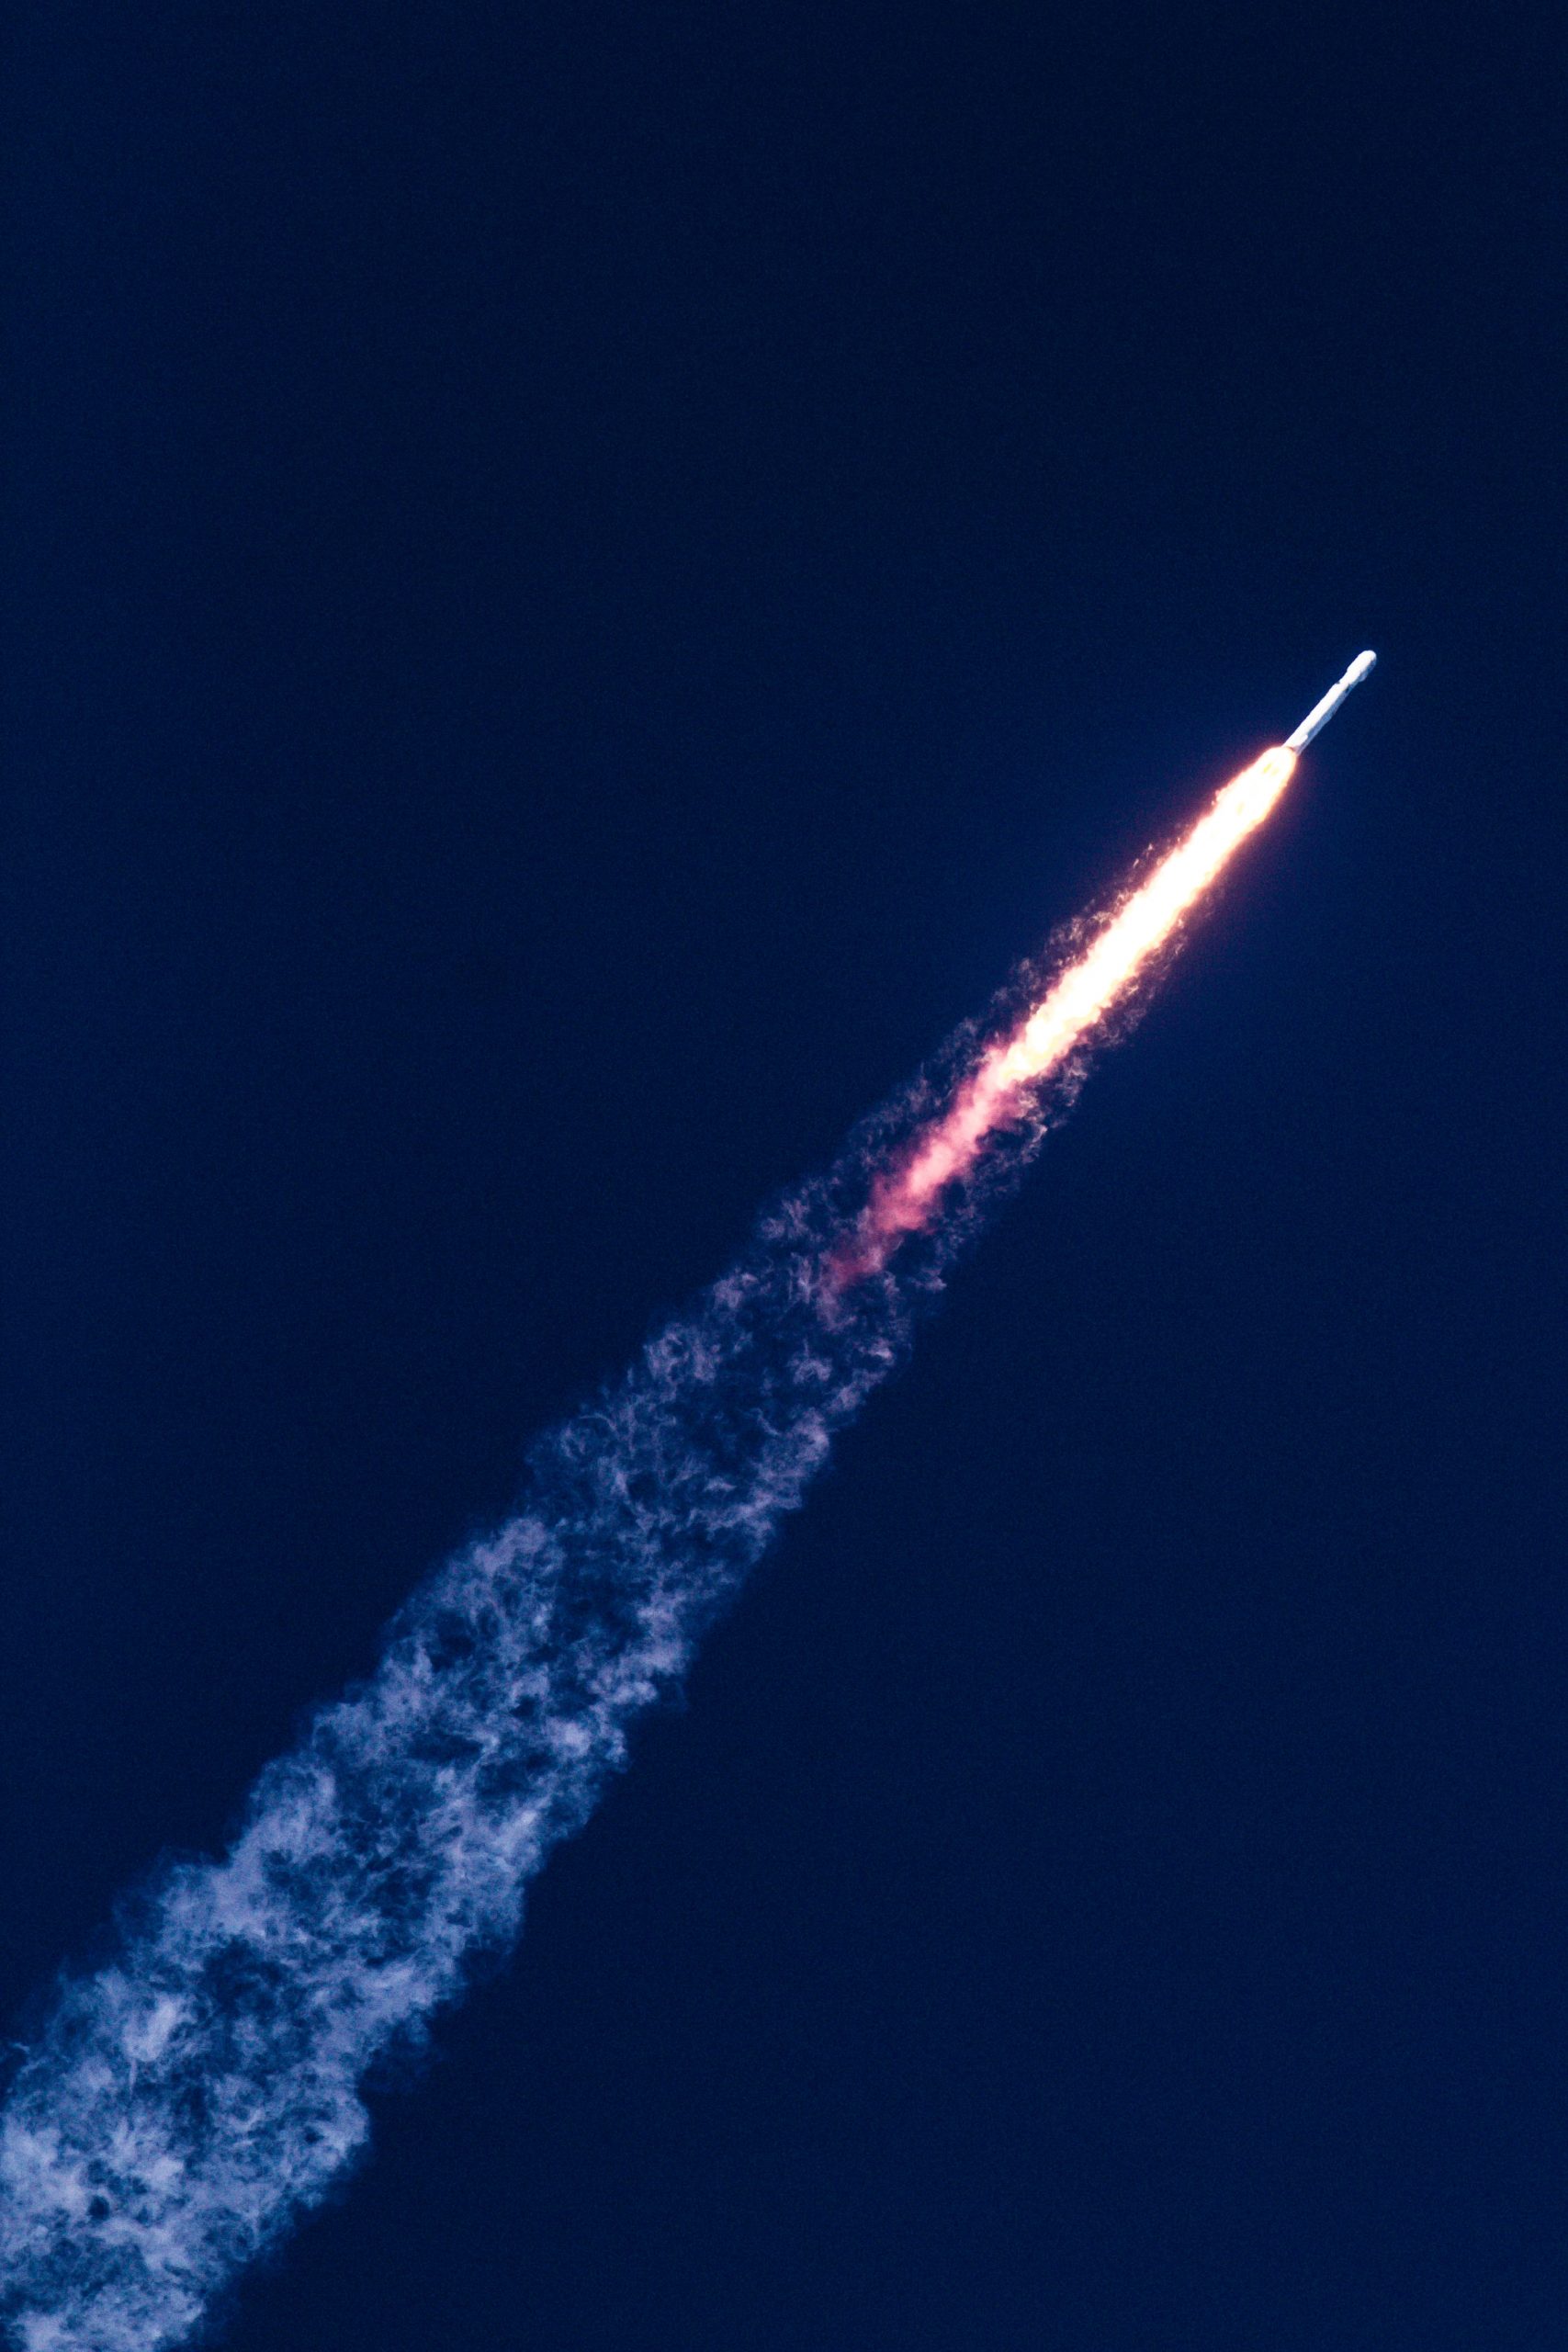 Bild: Bill Jelen, space rocket with flames, CC0, via unsplash.com (Keine Änderungen vorgenommen)